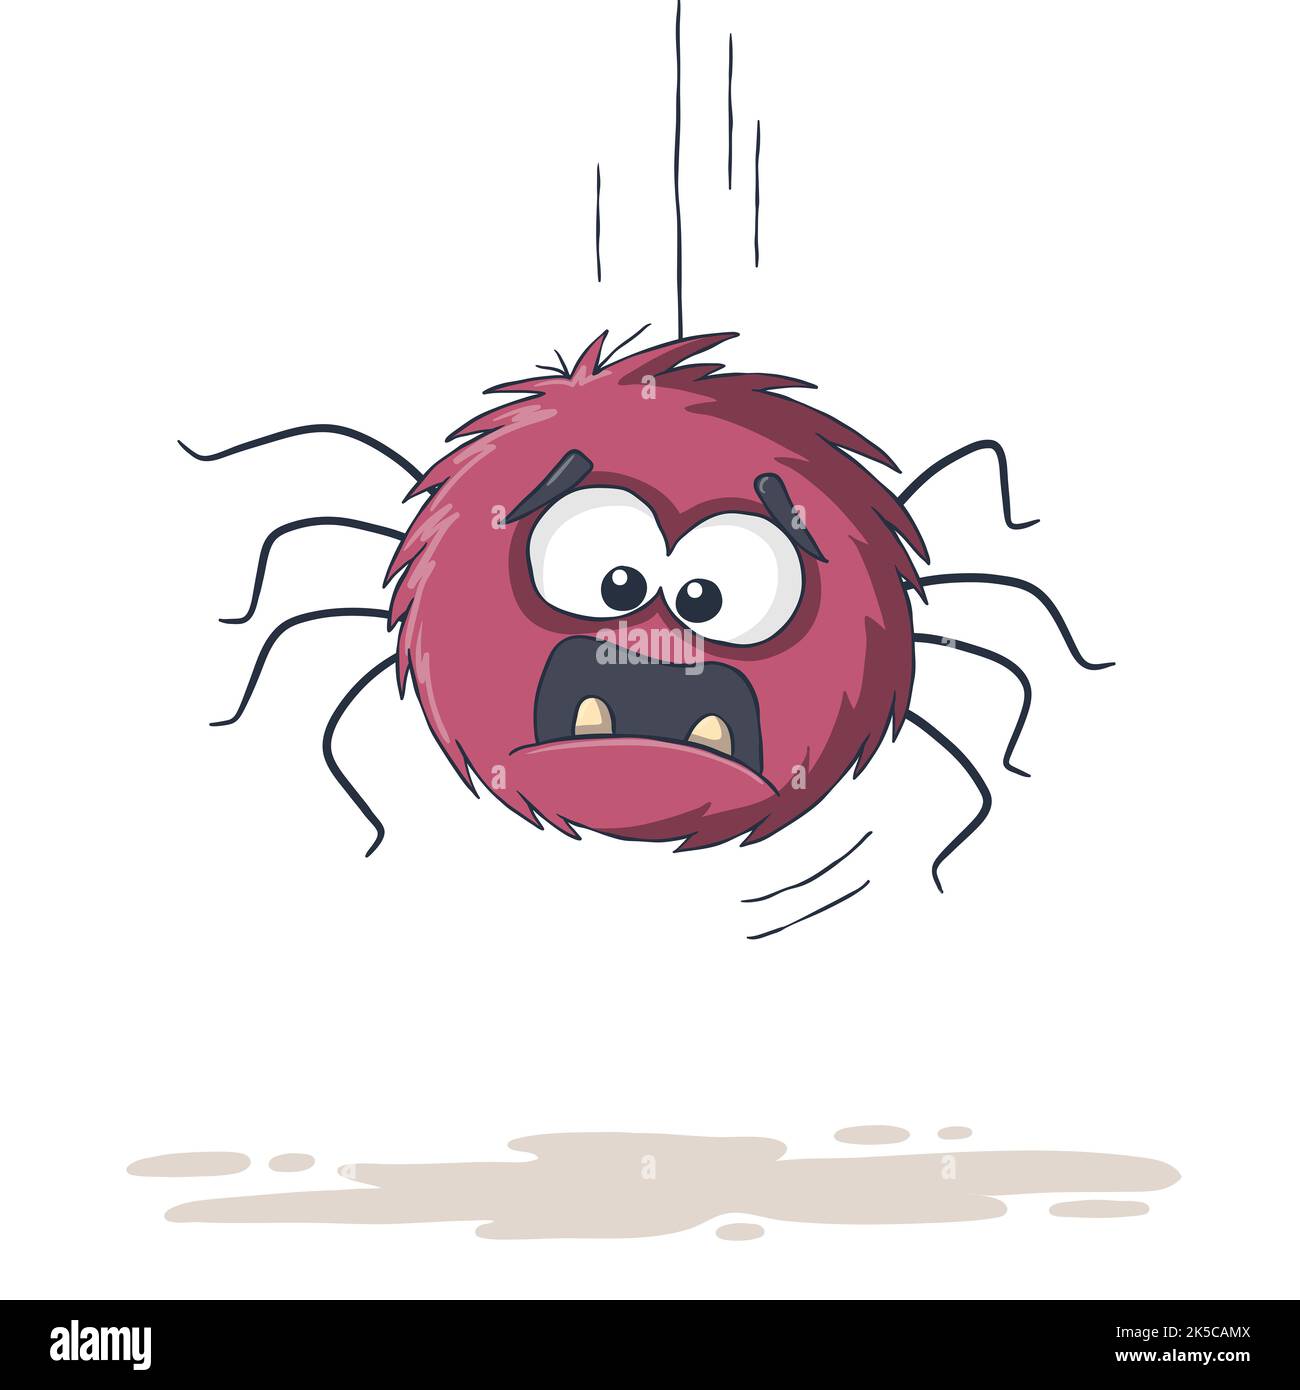 Funny cartoon spider. Stock Photo